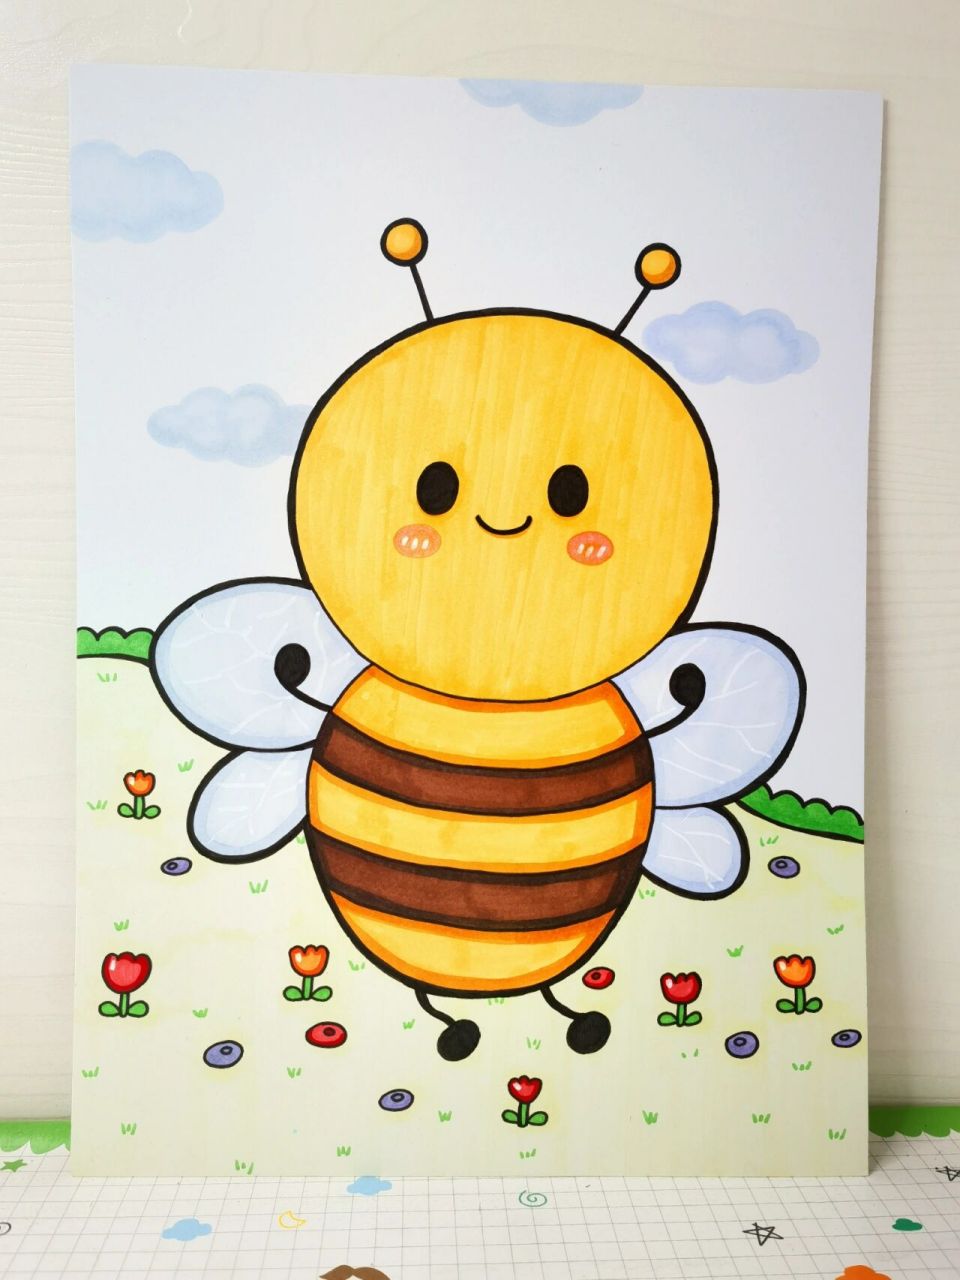 蜂蜜简笔画彩色图片